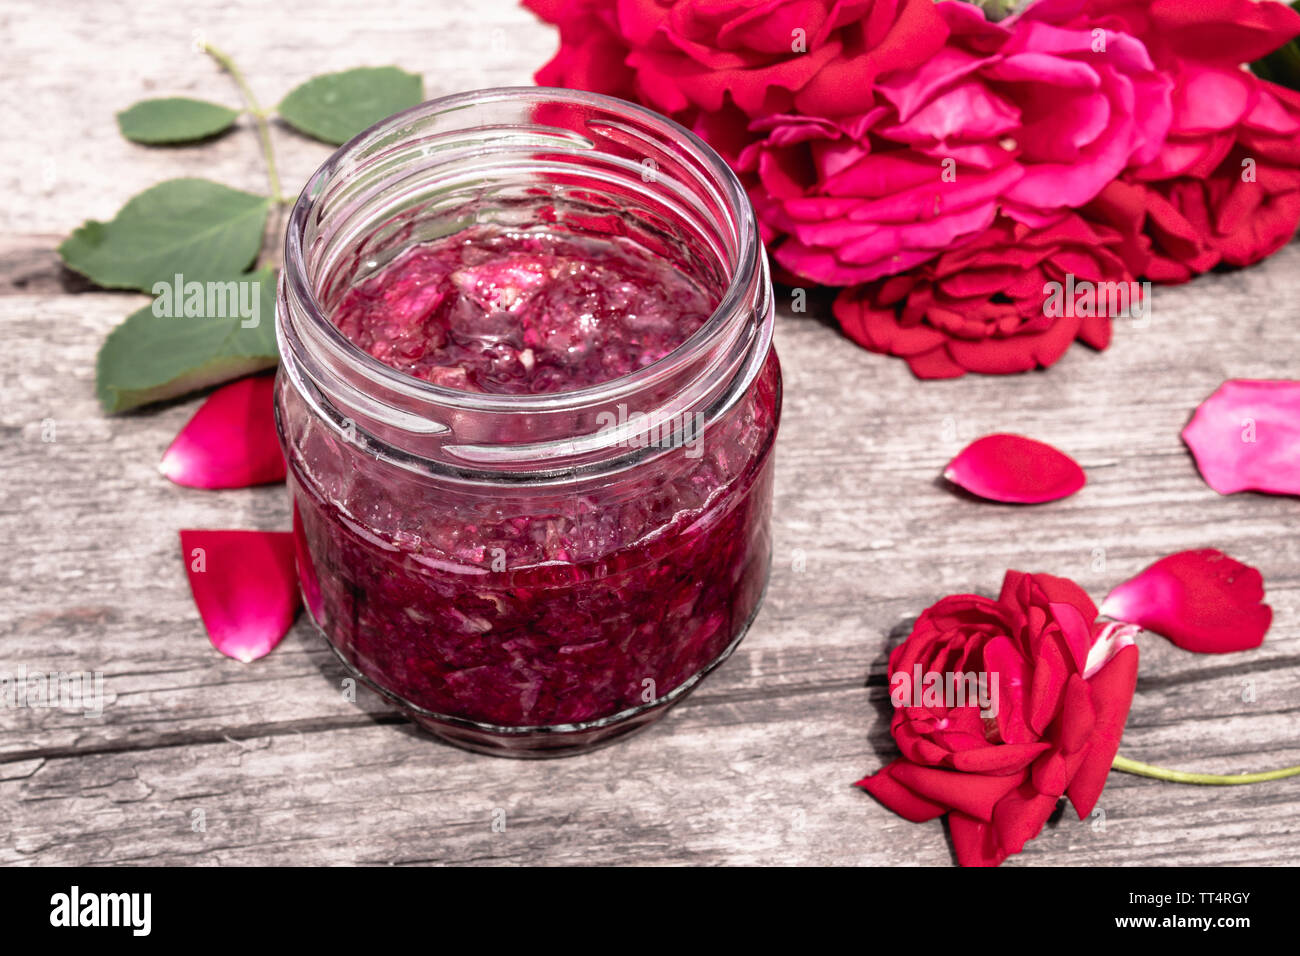 Marmeladenglas von Rosenblättern auf einen hölzernen Tisch mit Blüten von  Rosen. Blume Konfitüre. Gesundes Essen. Platz kopieren Stockfotografie -  Alamy